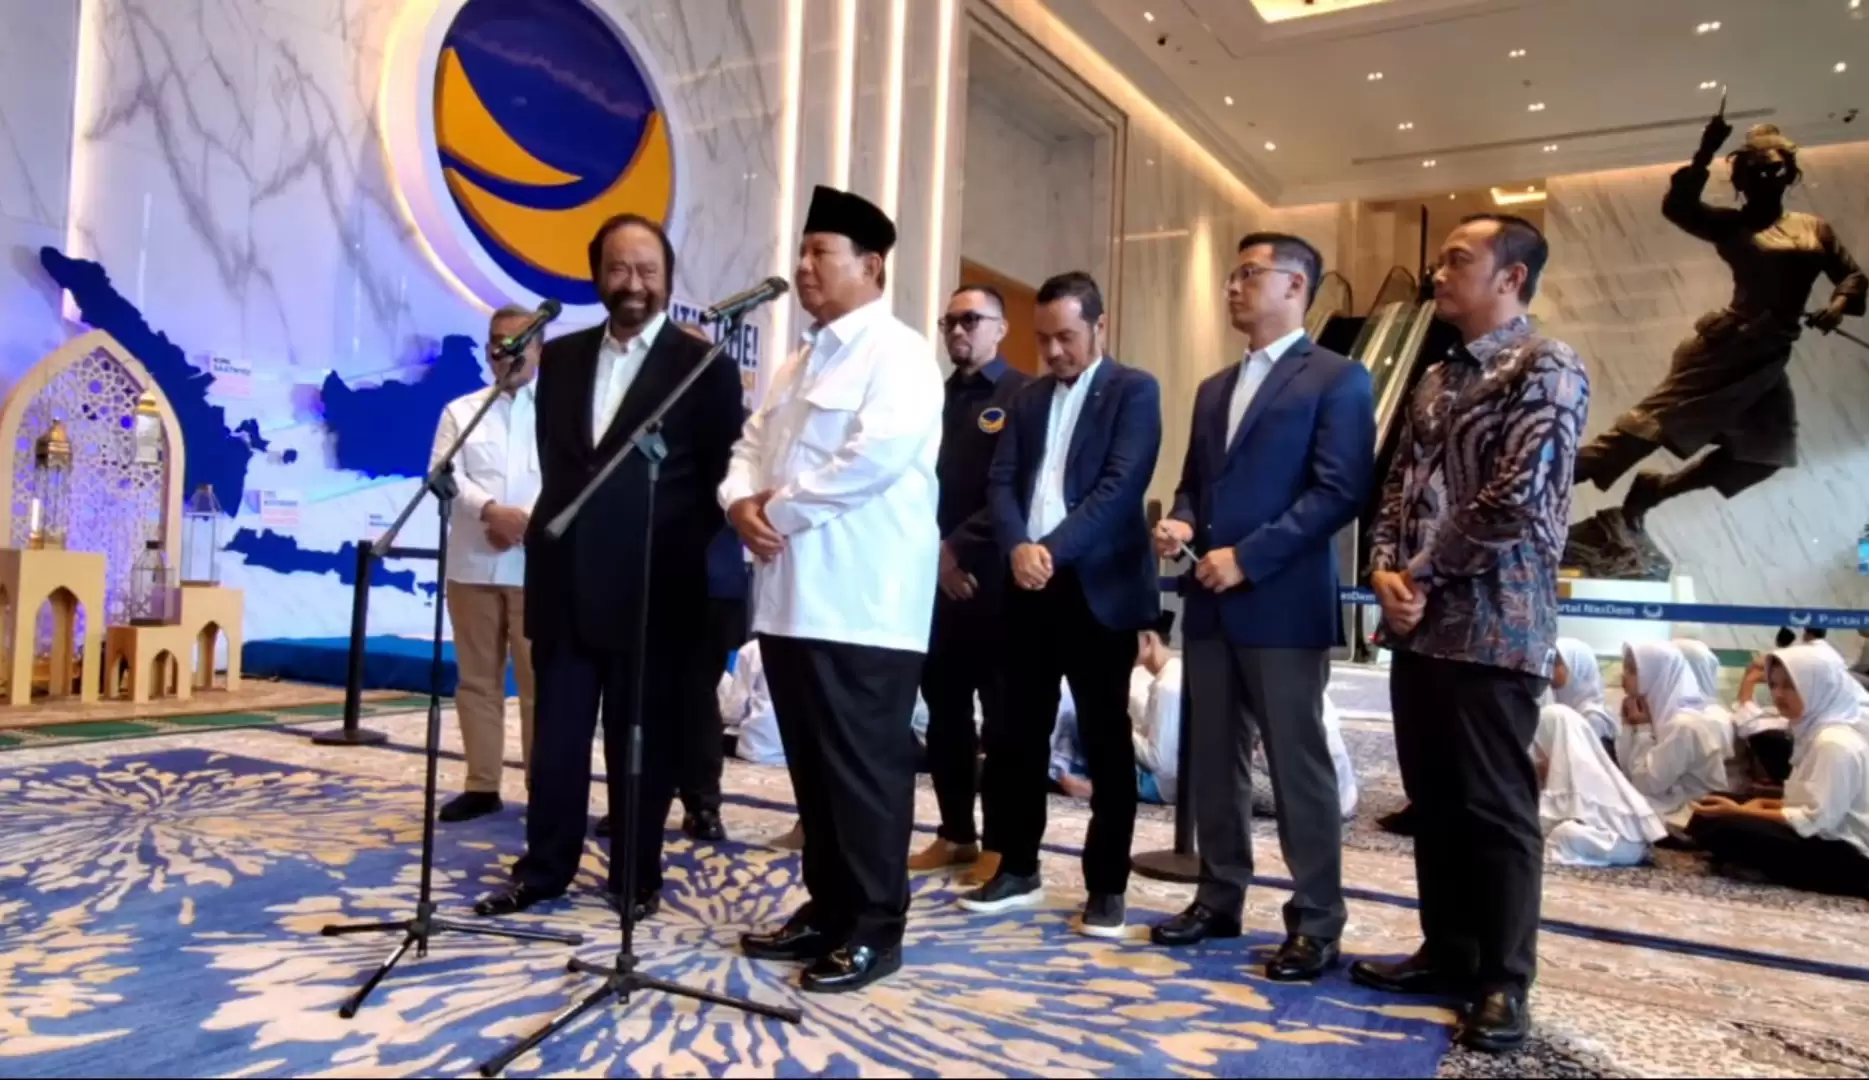 Ketua Umum Partai Nasdem Surya Paloh bersama Presiden terpilih Prabowo Subianto saat konferensi pers di Nasdem tower (Foto: Repro)